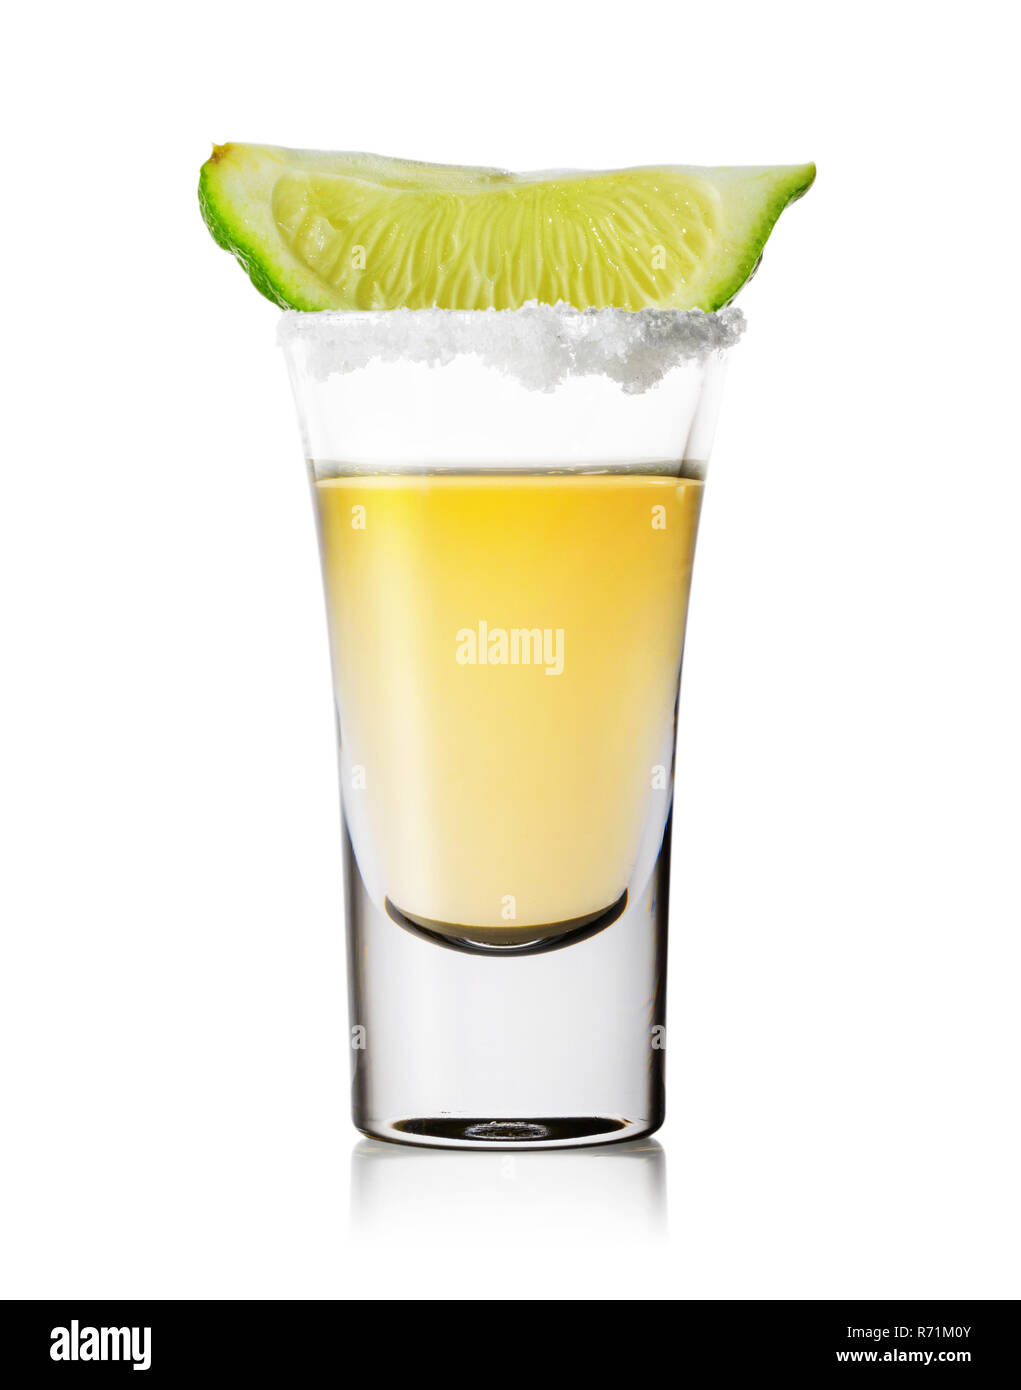 Glas Tequila mit Salz auf der Felge und einer Scheibe Limette auf einem weißen Hintergrund. Gold Tequila. Traditionell starke alkoholische Mexikanischen trinken. Stockfoto